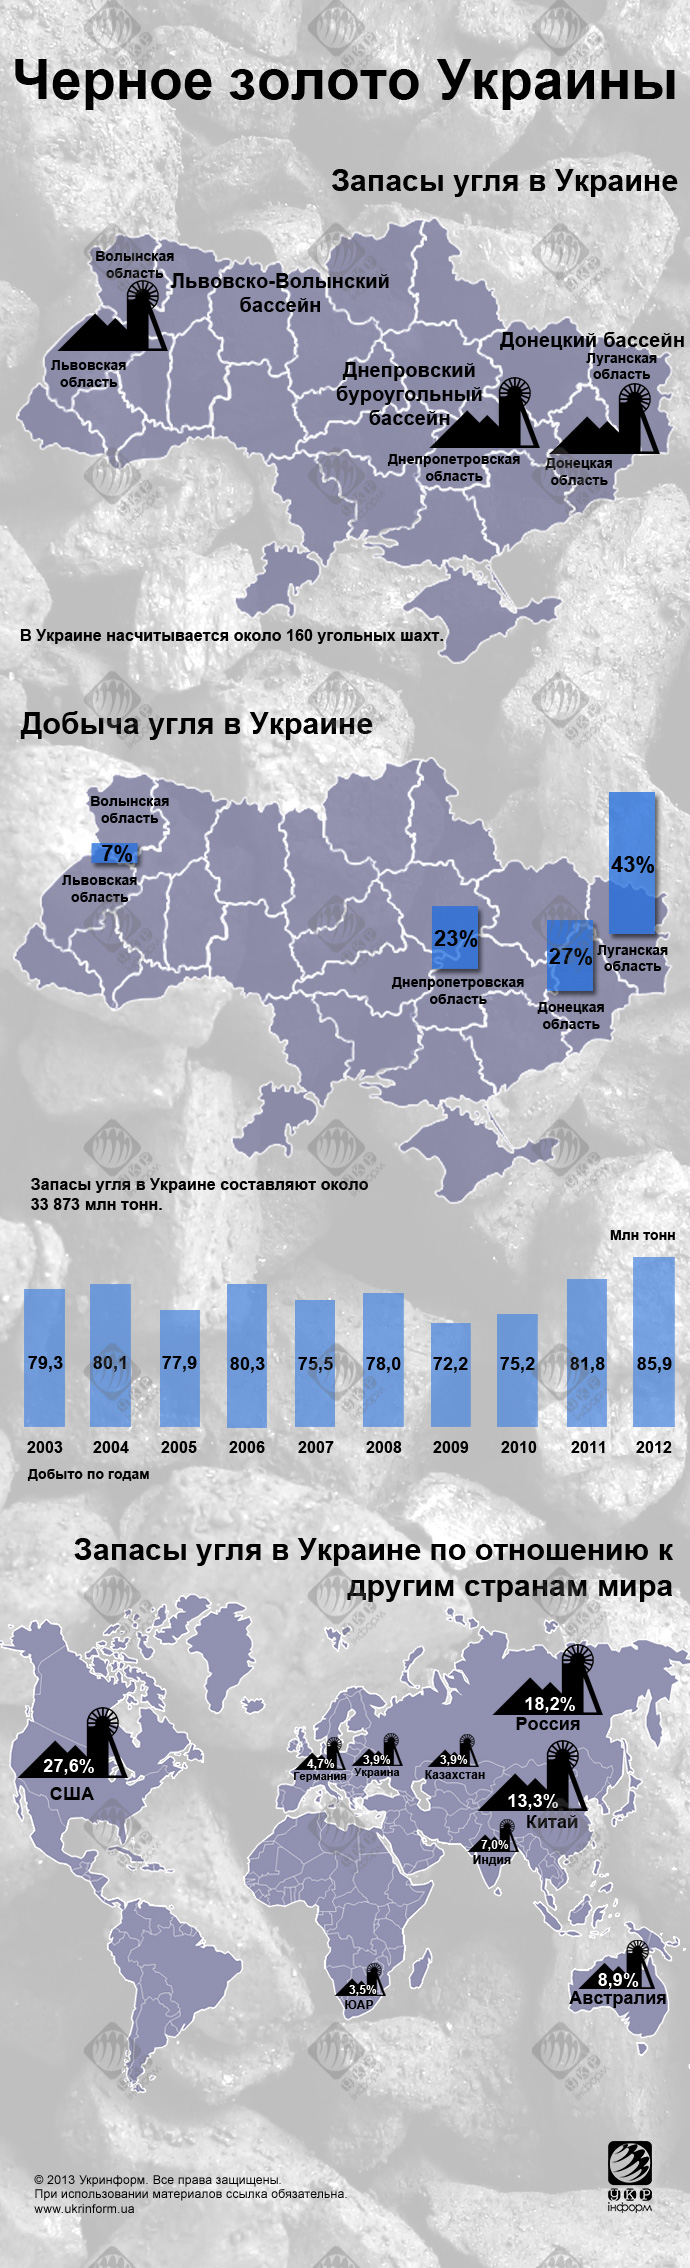 Карта угля в Украине